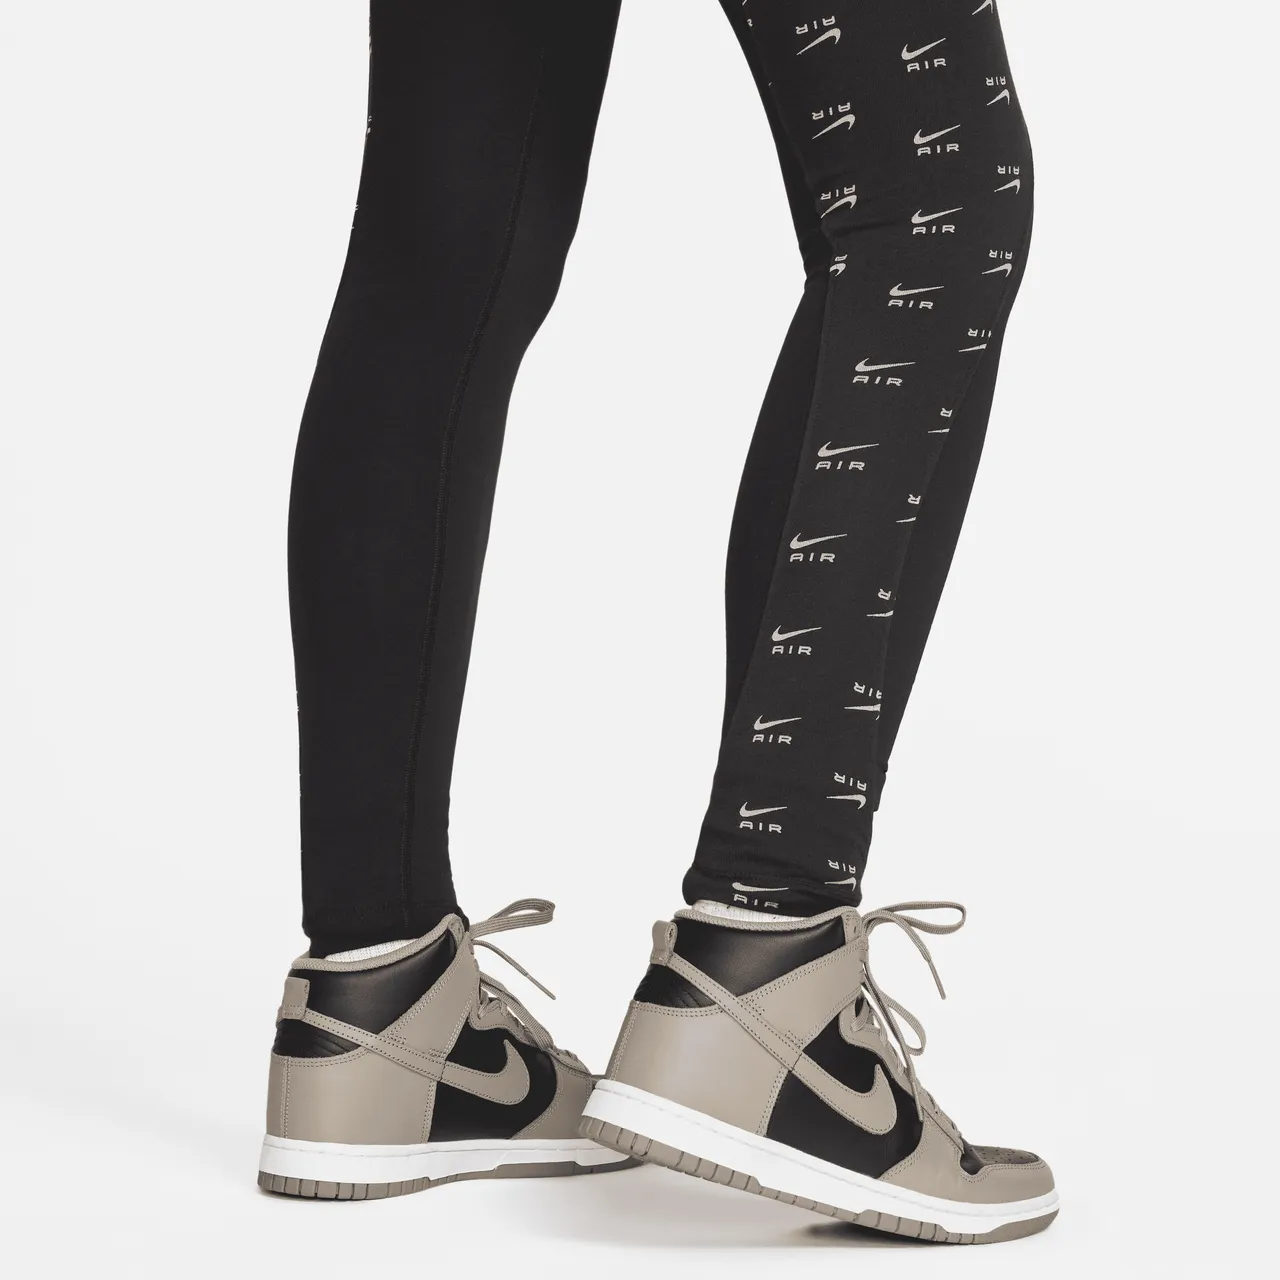 Nike Air Women's High-Waisted Full-Length Leggings - Black - Polyester